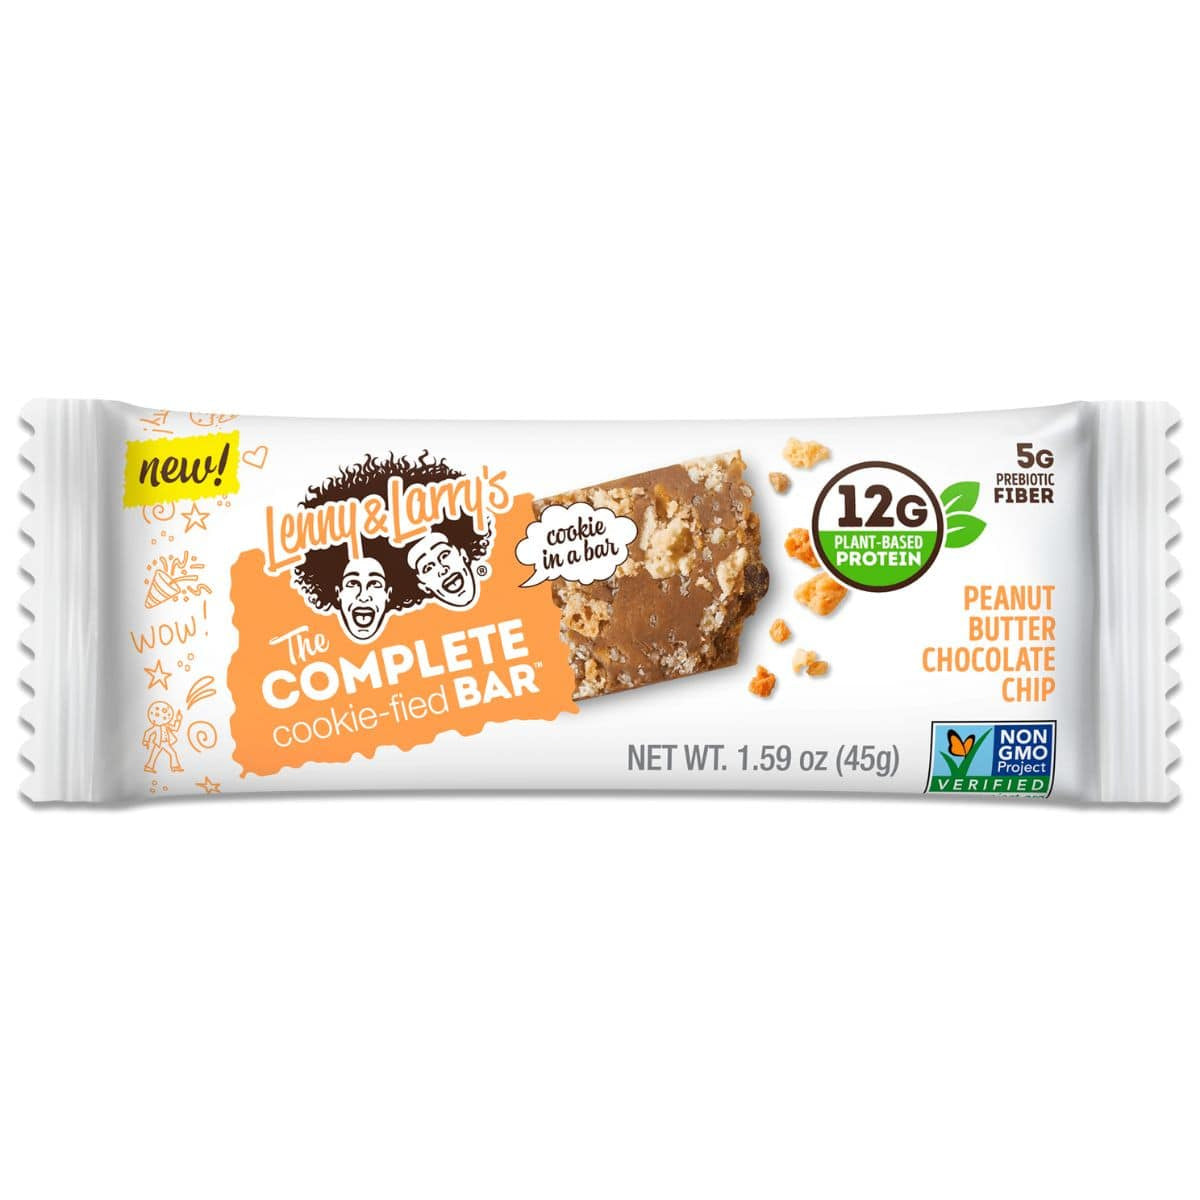 Lenny & Larry's Barre protéinée complète à base de biscuits et pépites de chocolat au beurre d'arachide (45G) - HULKMEAL